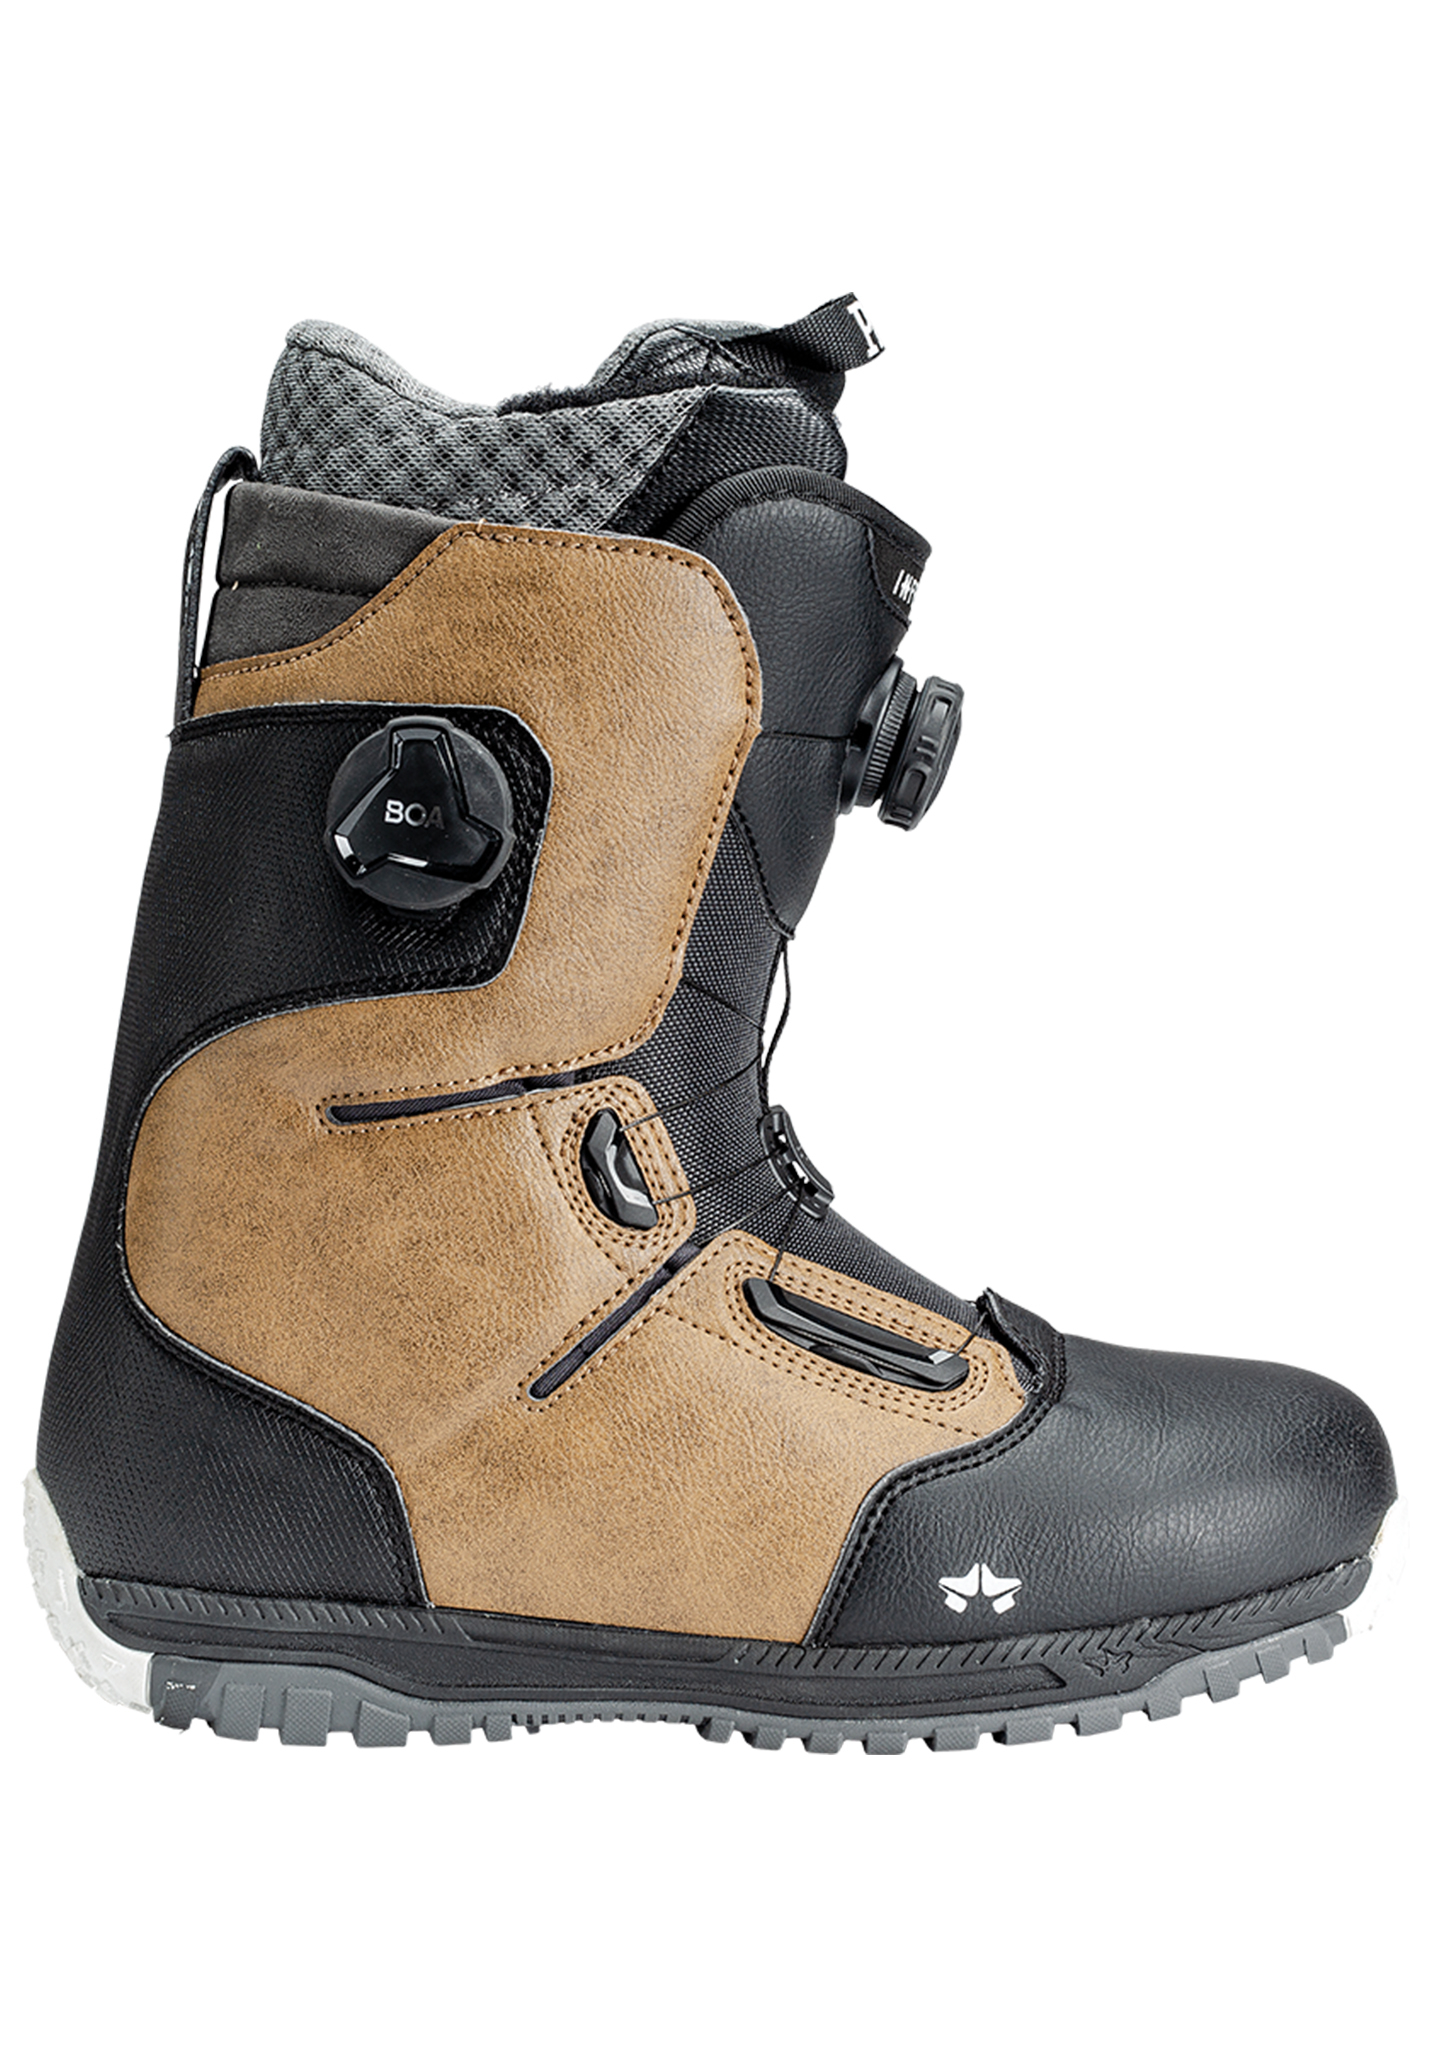 Rome Inferno Freeride Snowboard Boots schwarzbrauner mergel 45